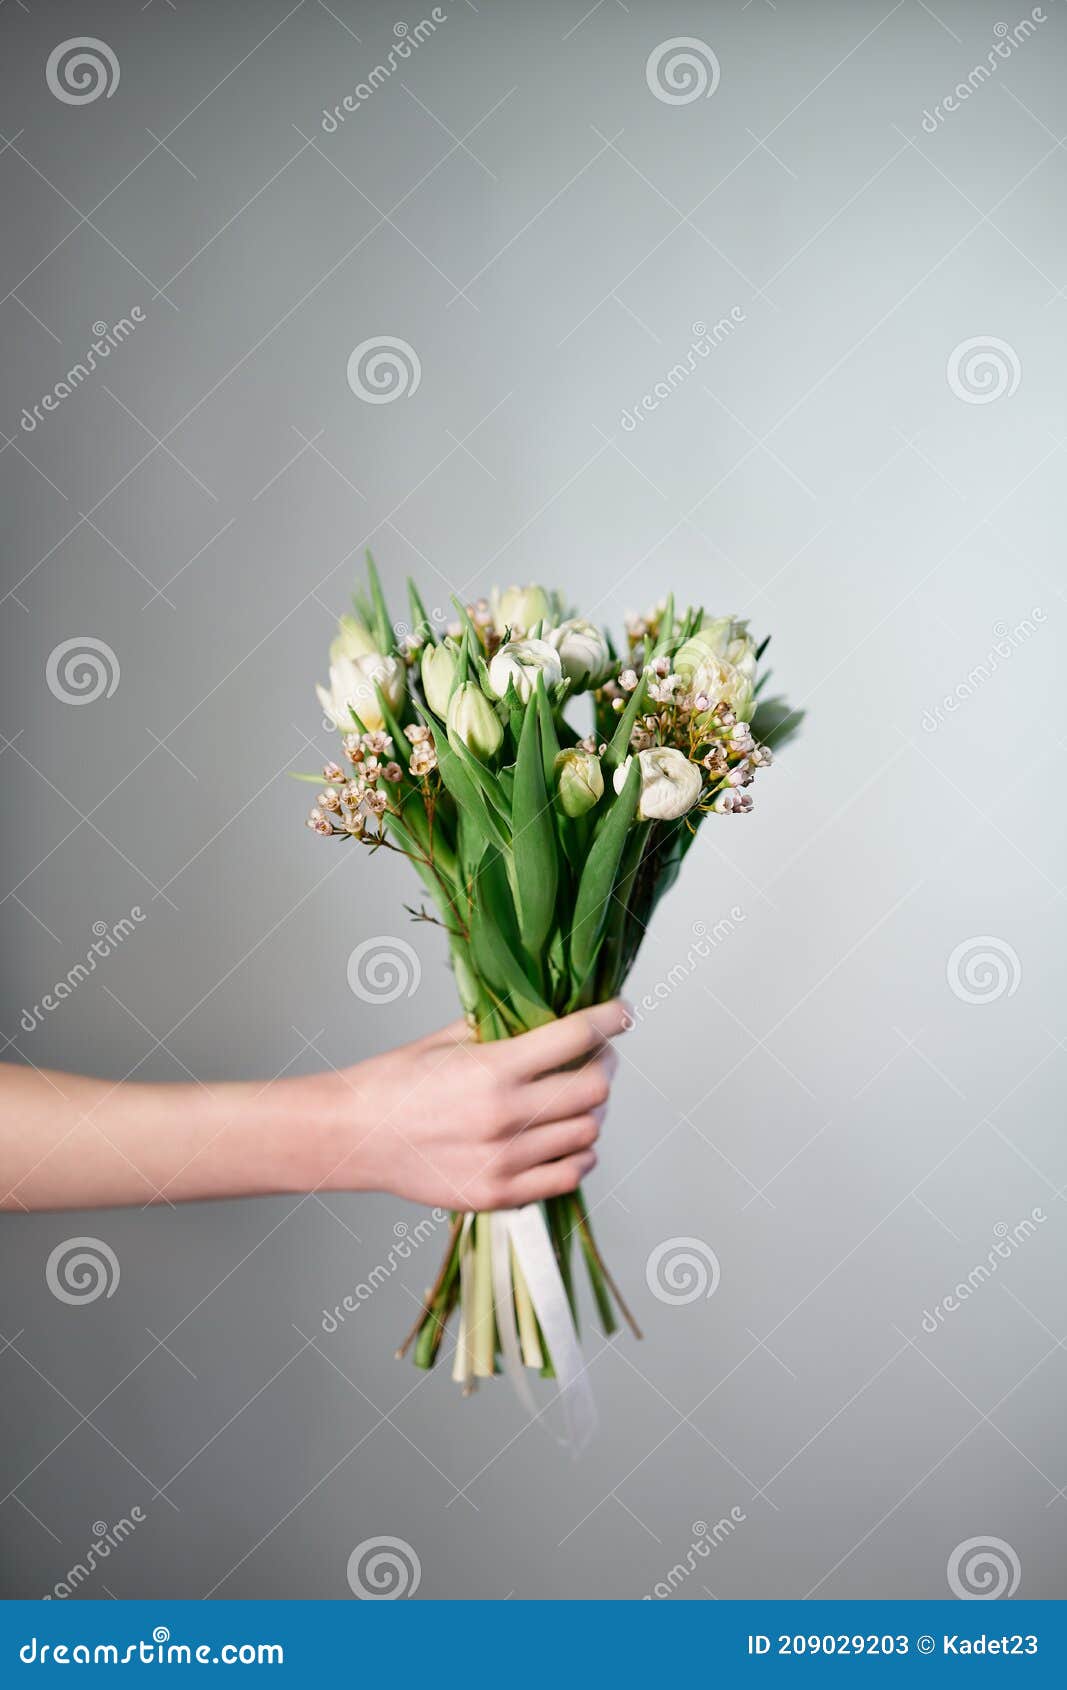 Main De Femme Avec Bouquet De Fleurs De Tulipe Blanche Image stock - Image  du beau, romantique: 209029203